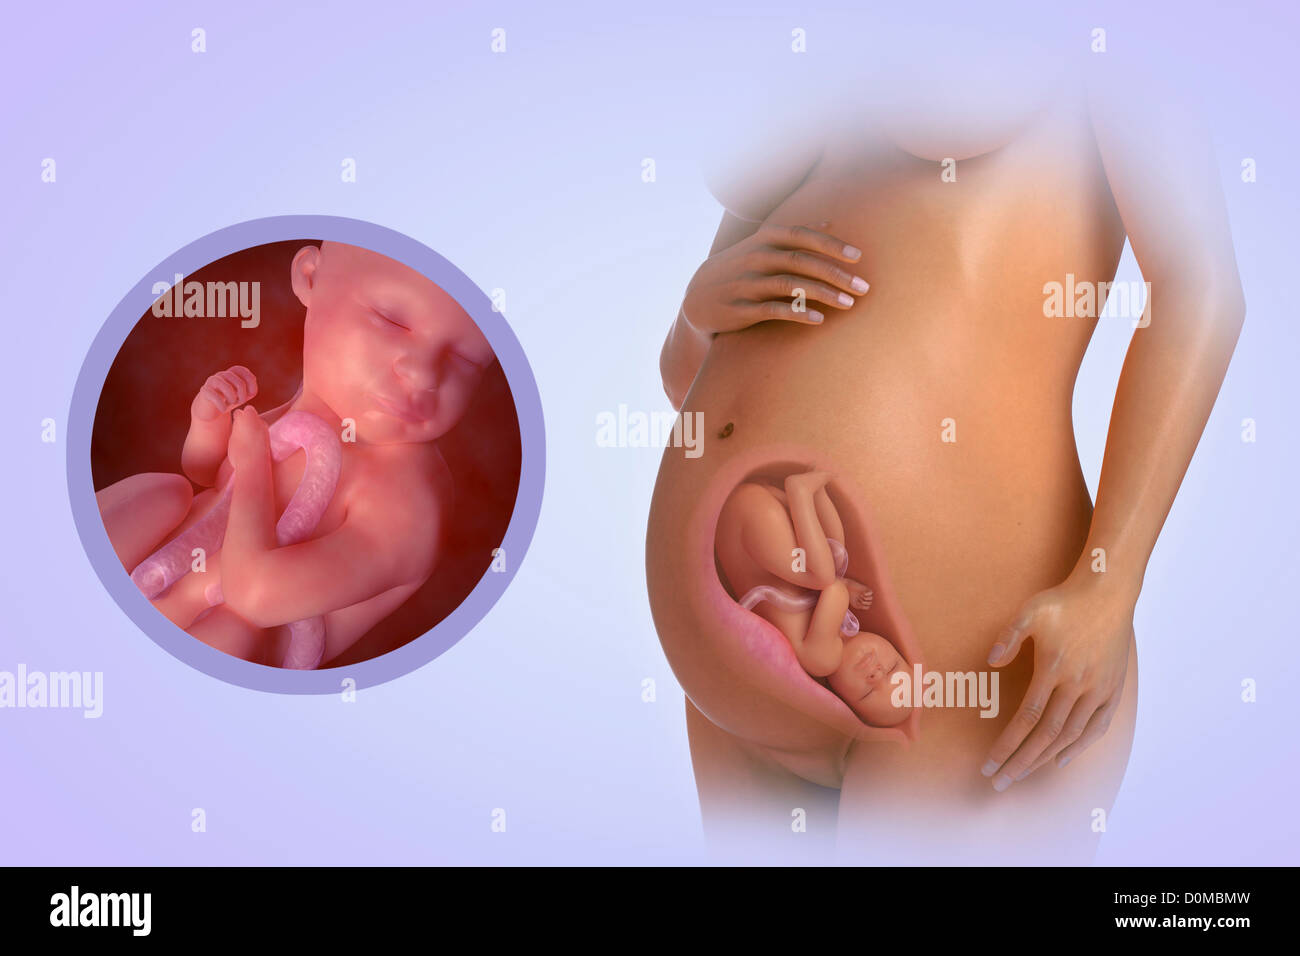 Un modèle humain montrant la grossesse à la semaine 32. Banque D'Images